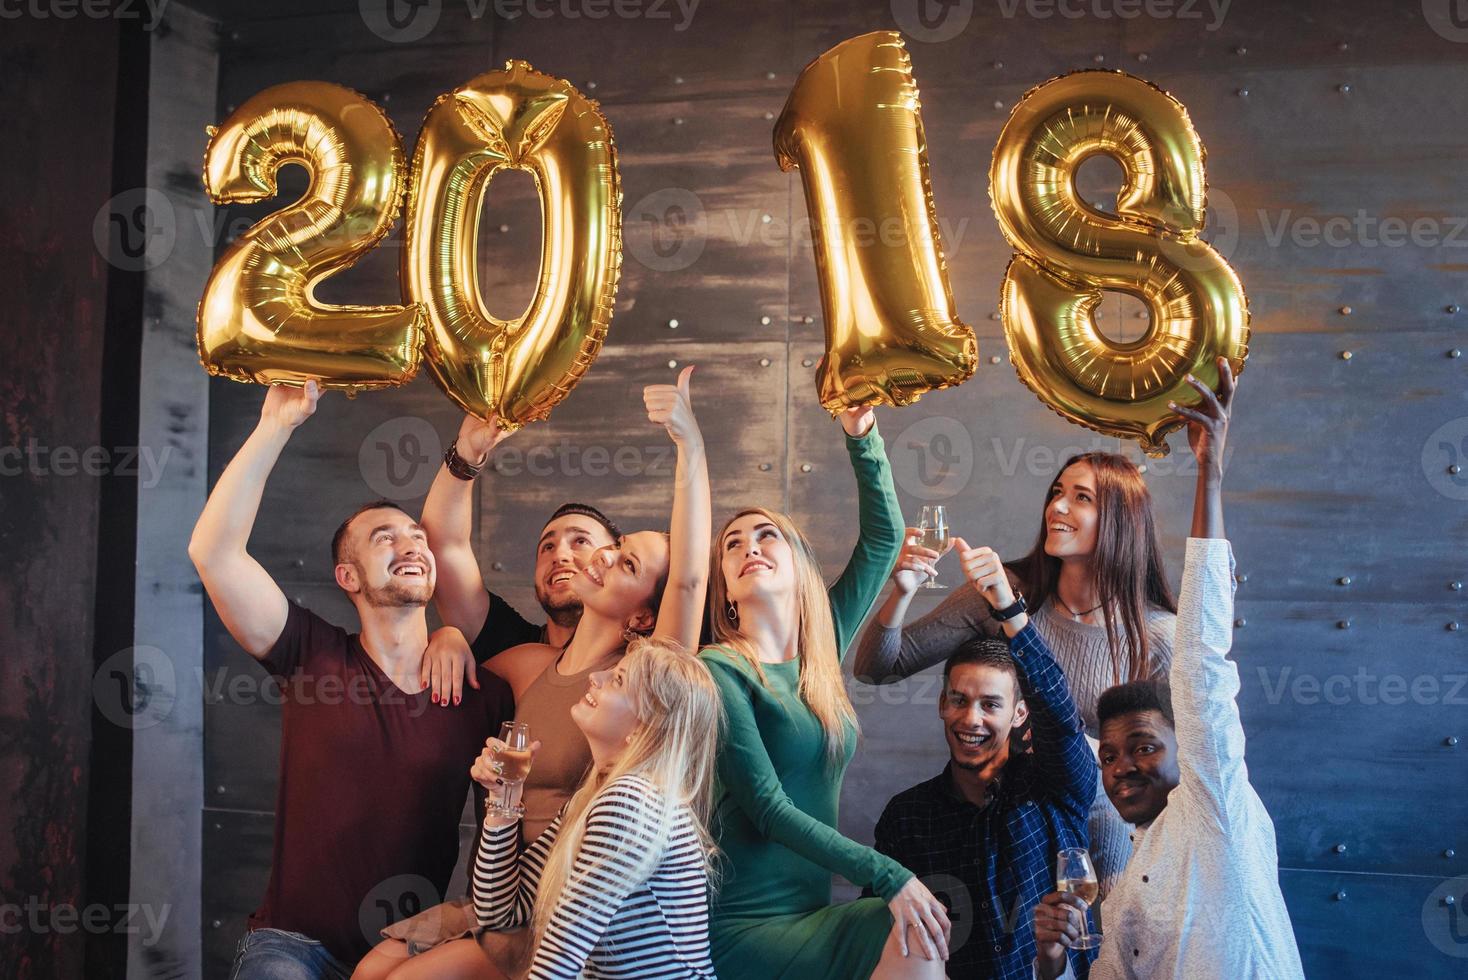 um grupo de jovens alegres segura números que indicam a chegada de um novo ano de 2018. a festa é dedicada à celebração do ano novo. conceitos sobre estilo de vida de união da juventude foto